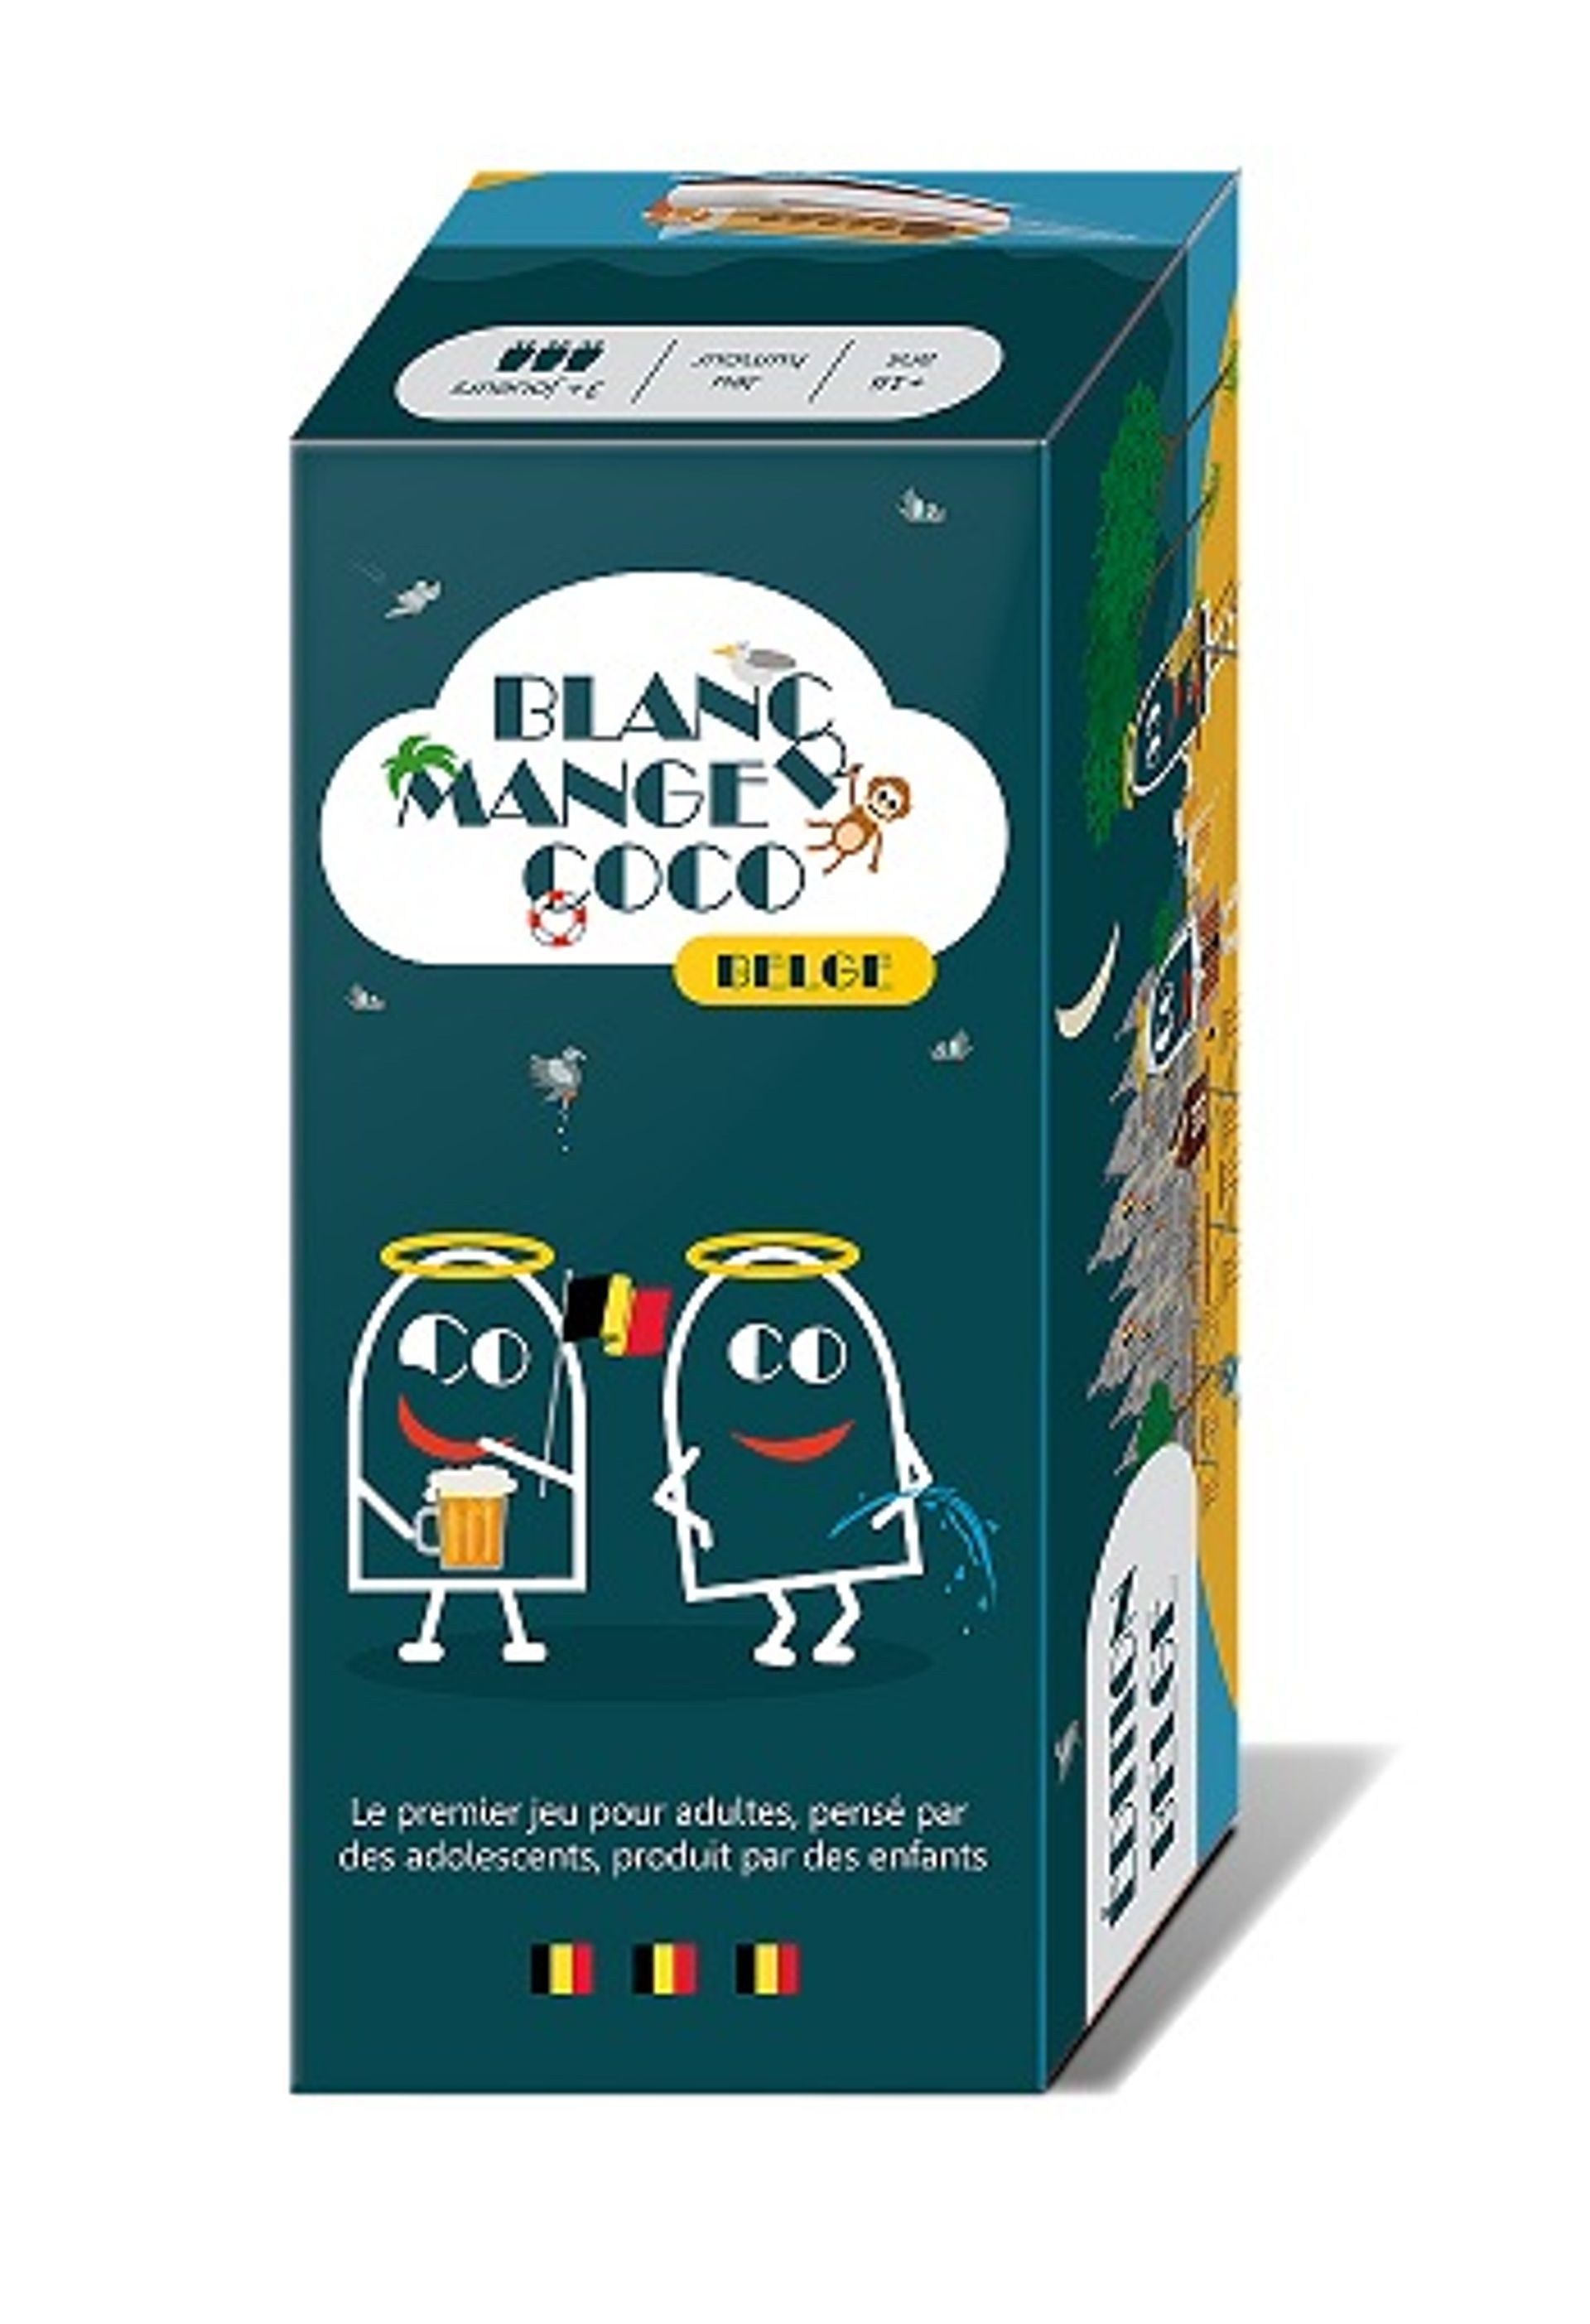 Blanc Manger Coco, le jeu le plus vendu en France revient avec une version  100% belge 